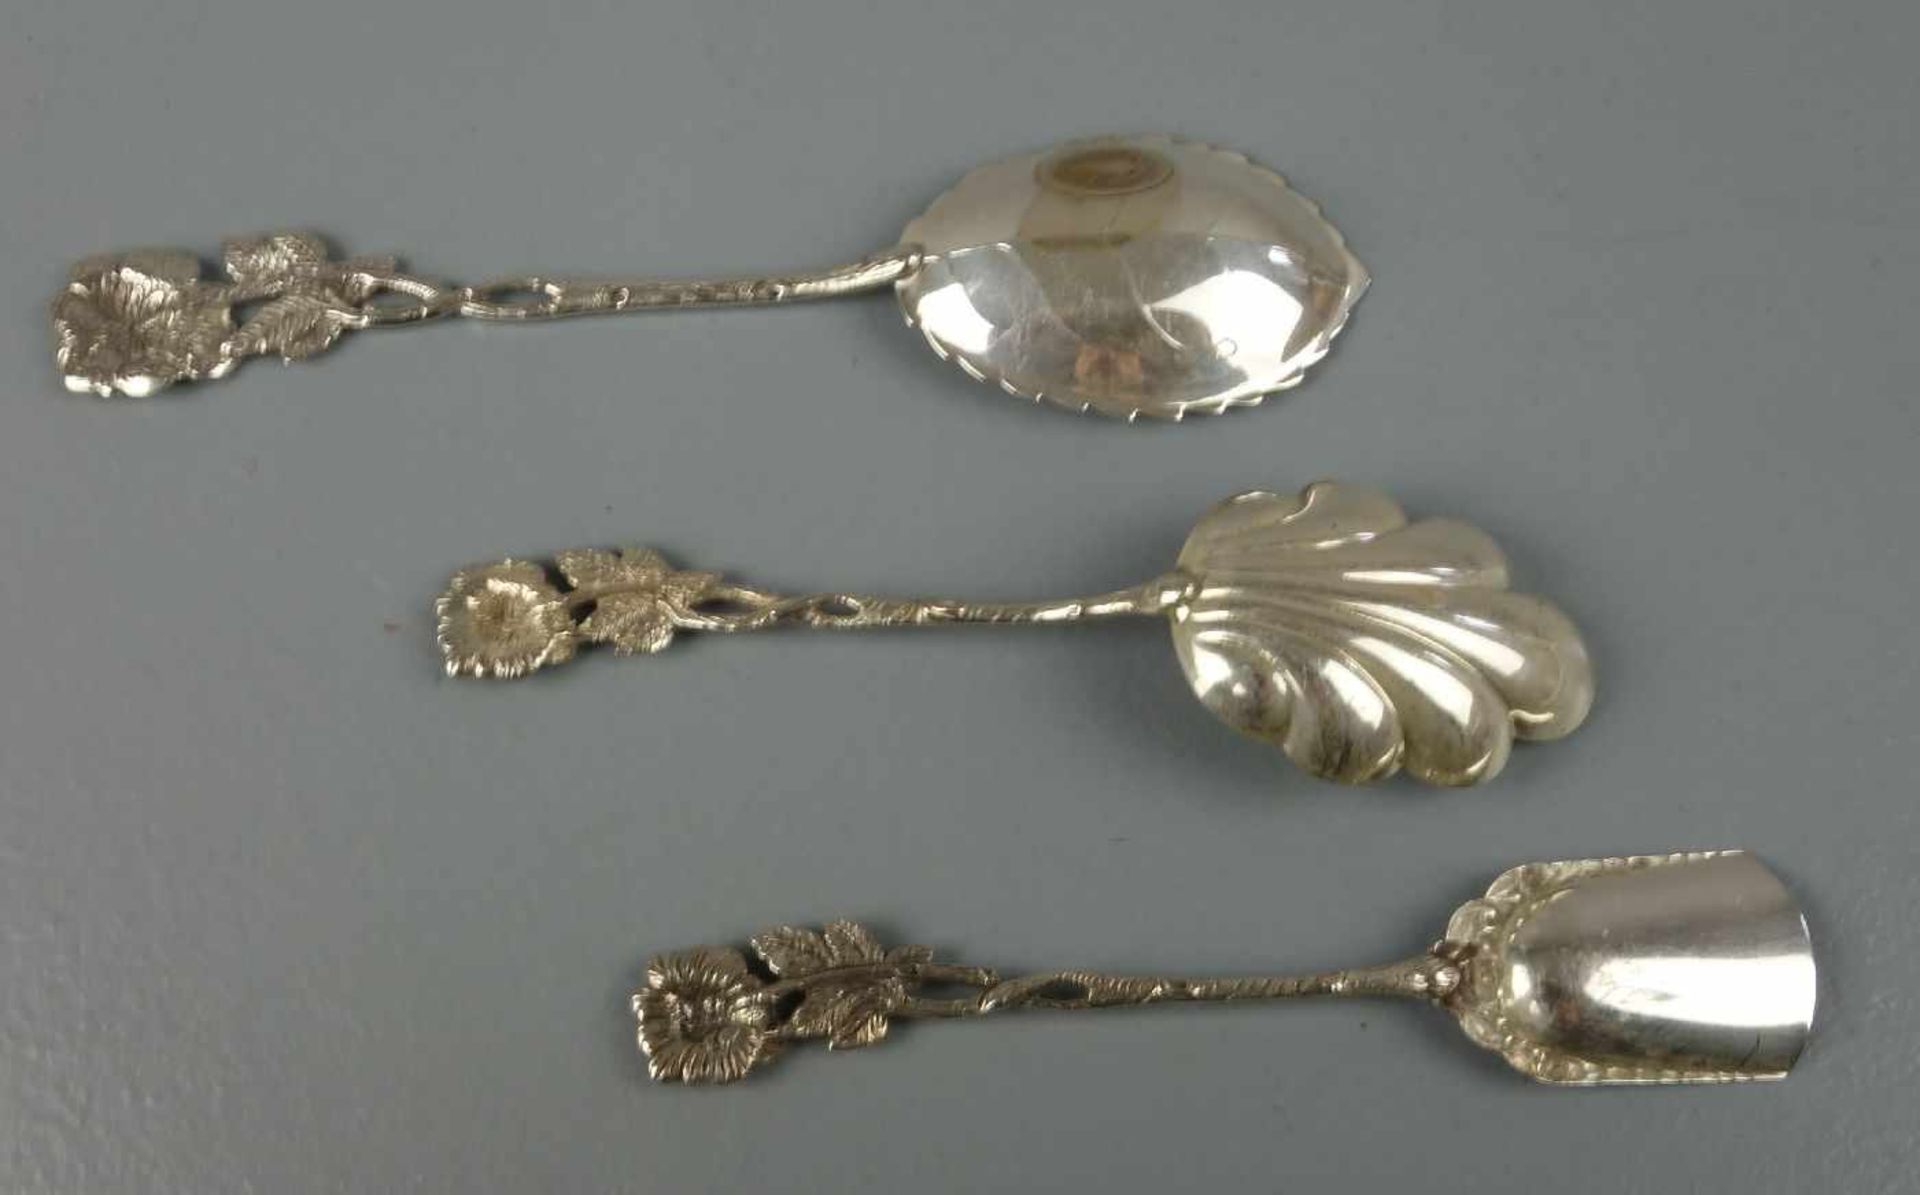 KONVOLUT VORLEGEBESTECK "HILDESHEIMER ROSE" / two serving spoons and a serving fork, 20. Jh., - Image 3 of 4